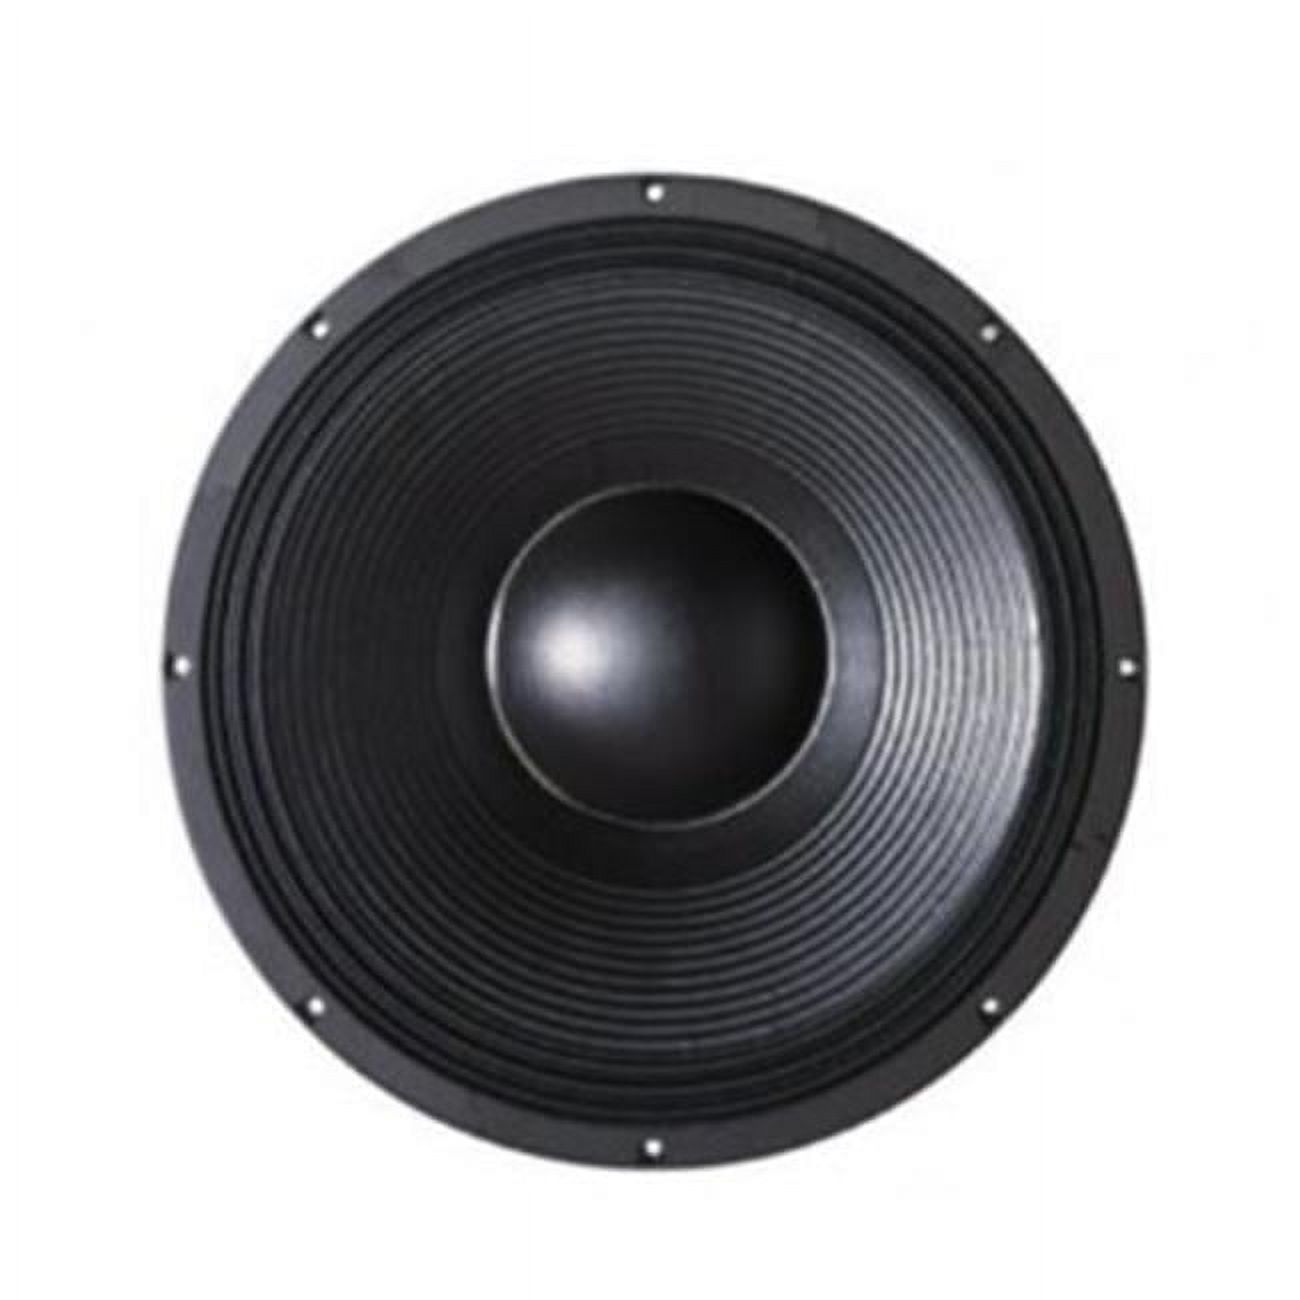 B & C Speakers 21SW115-4 21 in. 3400W 4 Ohm Professional Neodymium Subwoofer - image 1 of 2